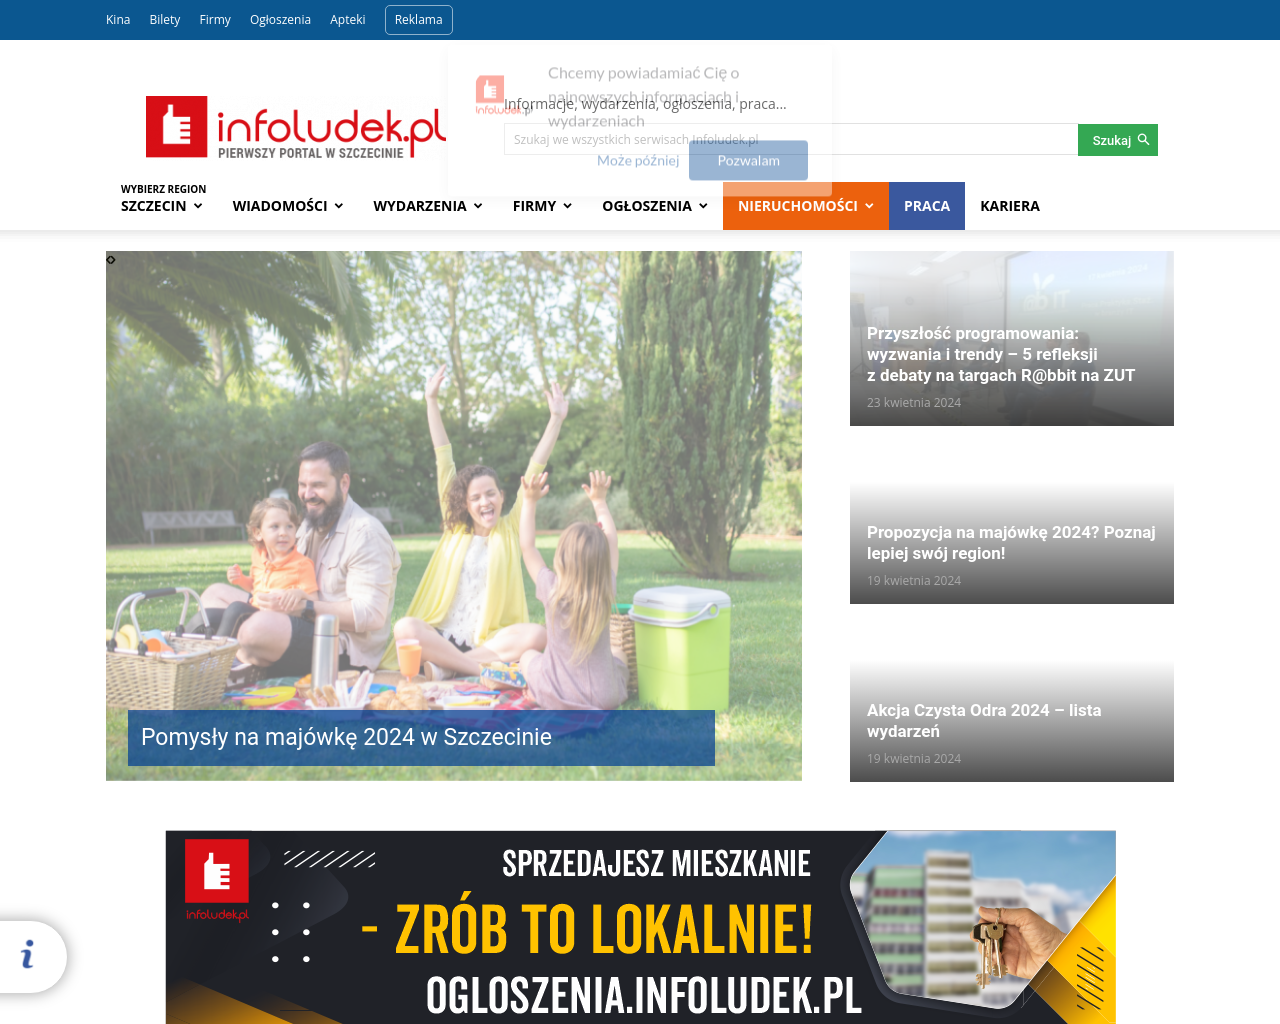 infoludek.pl